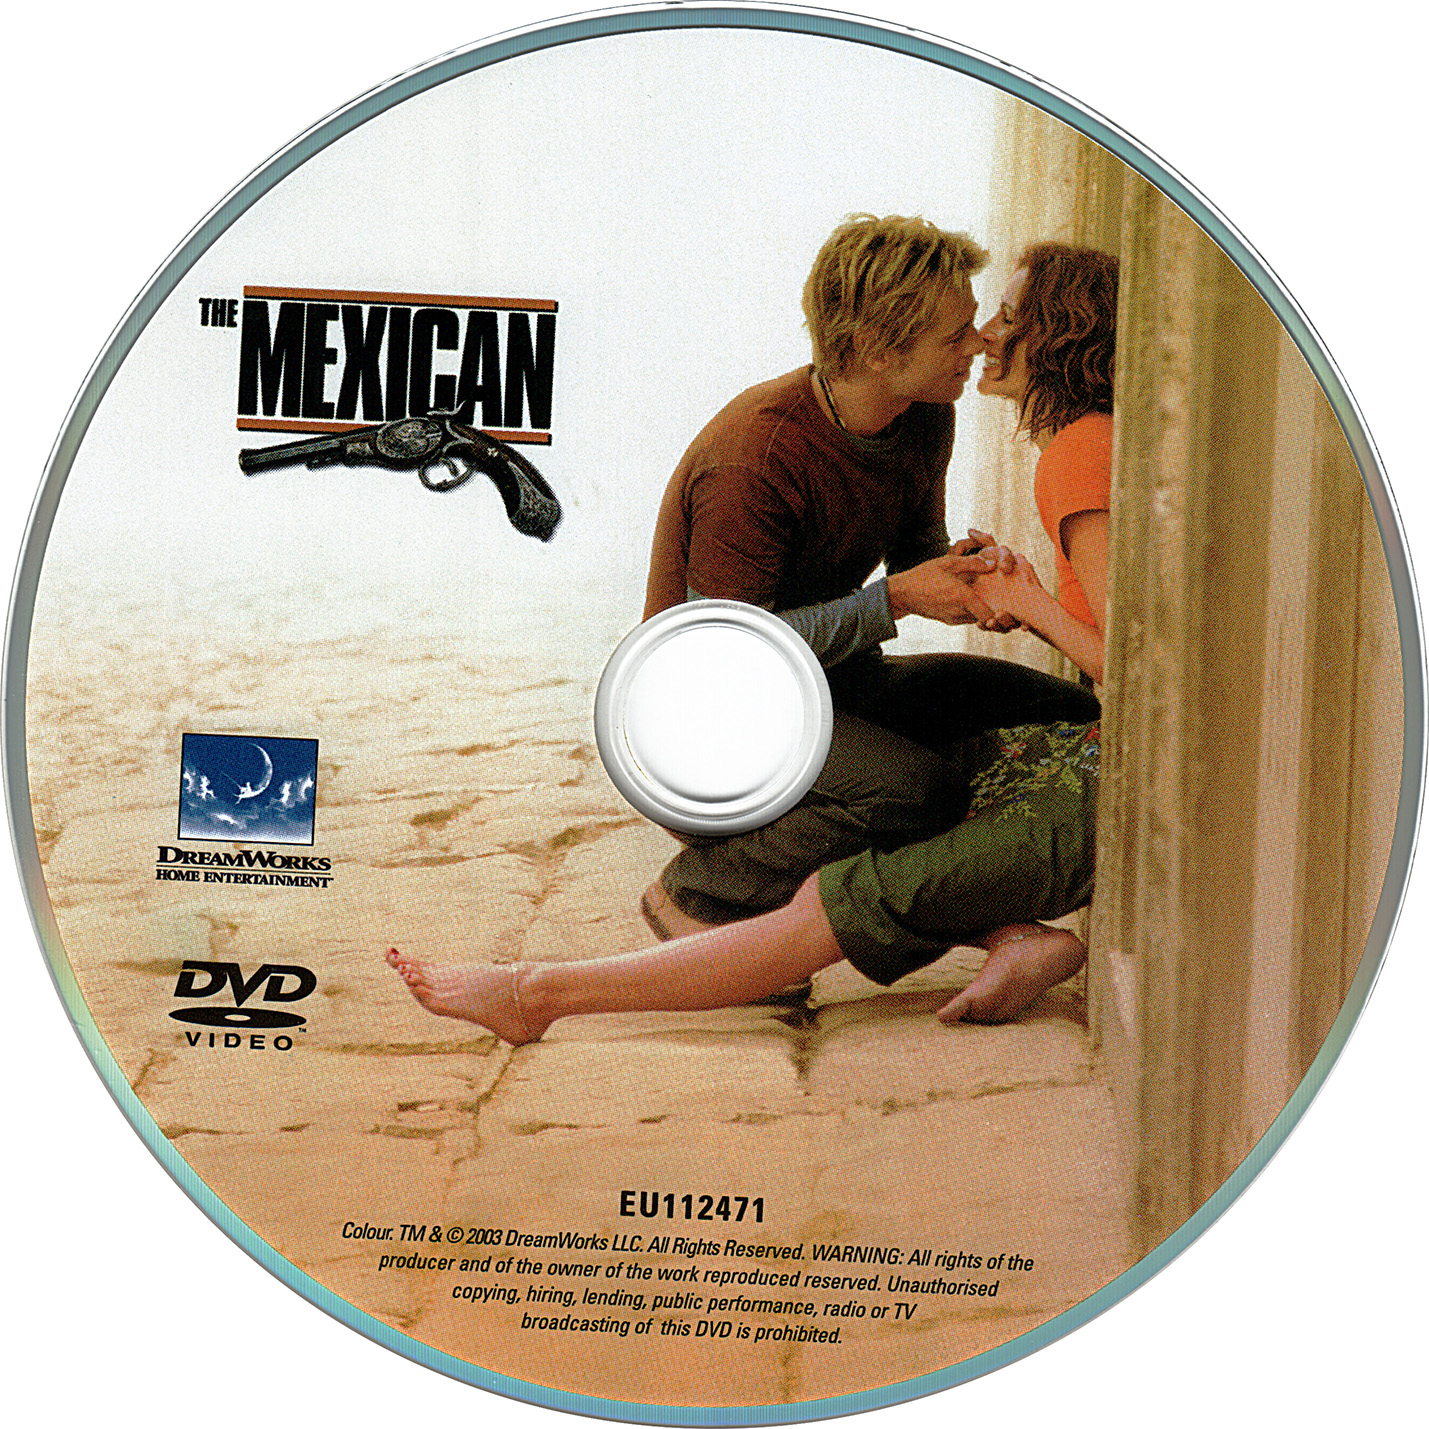 Le mexicain (2001)